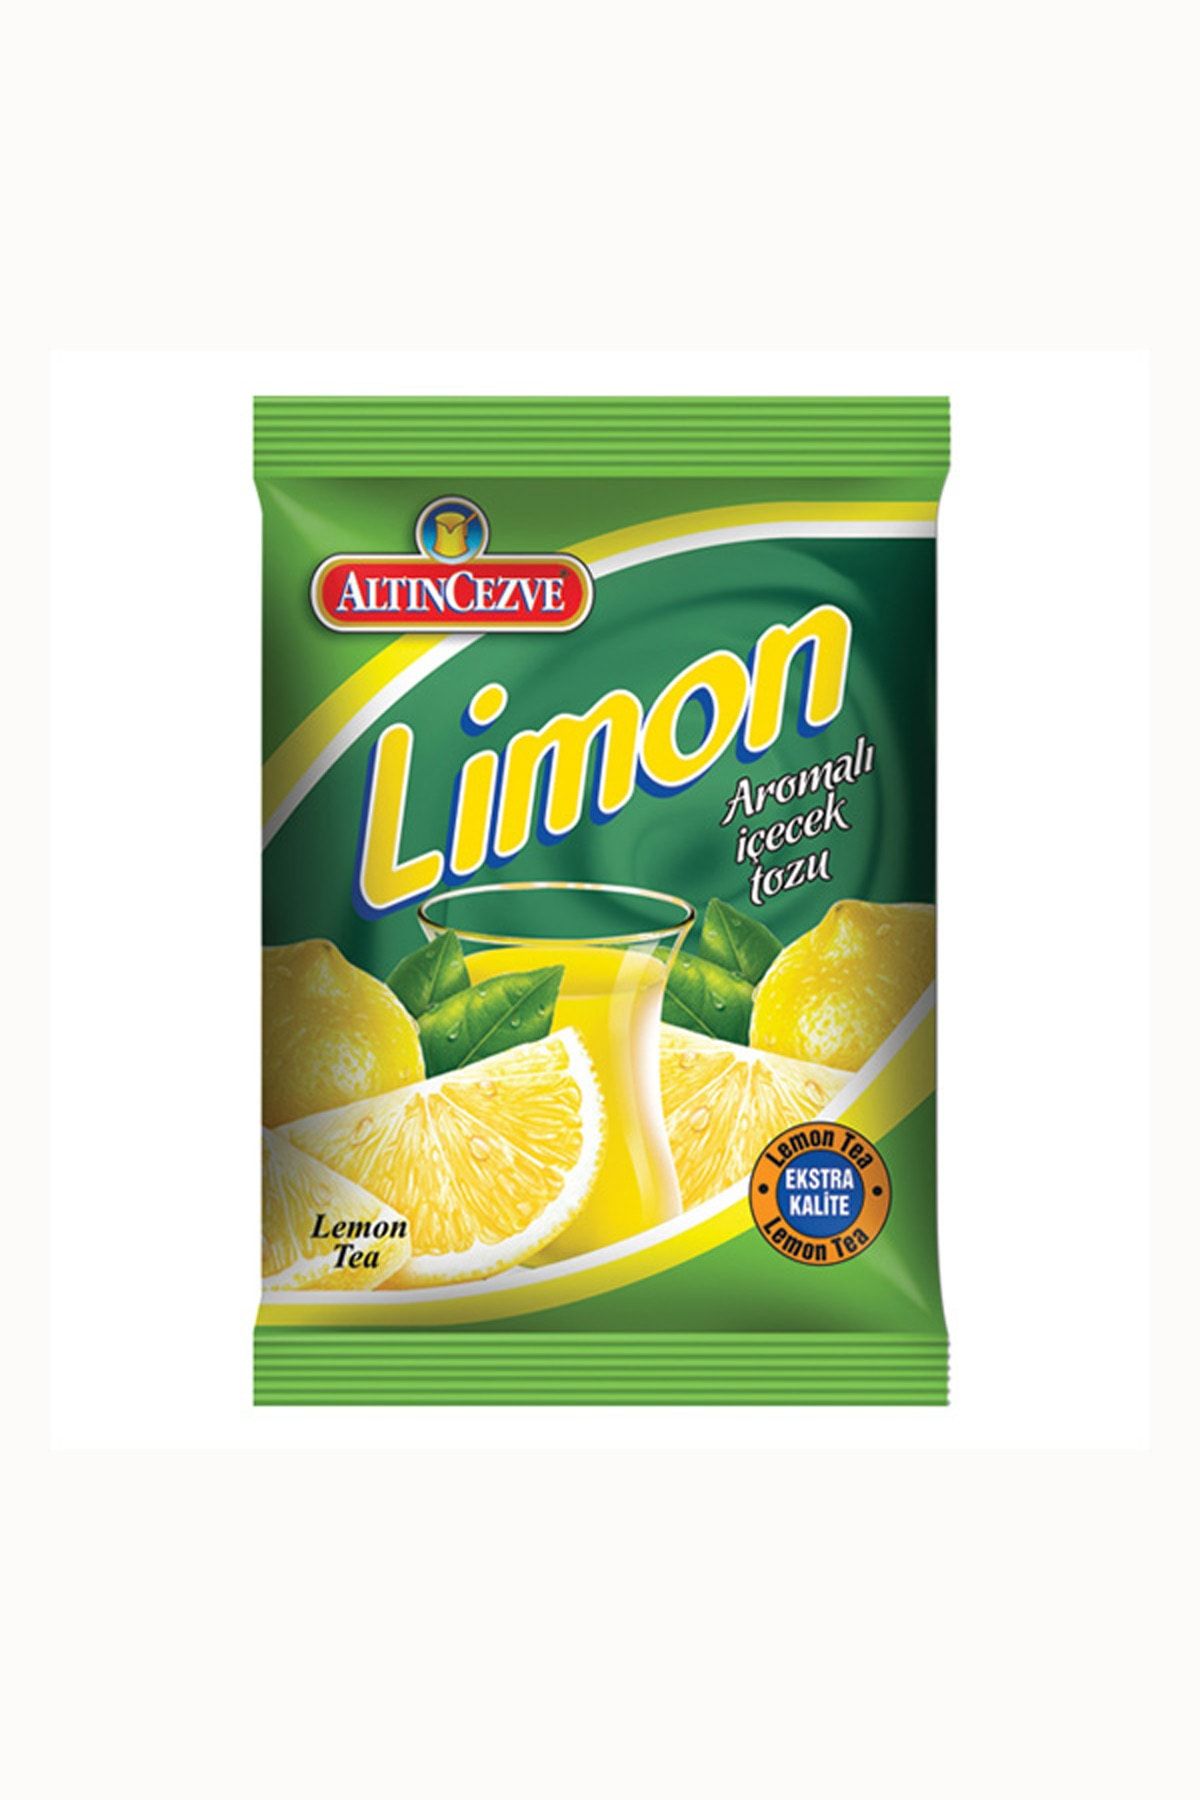 Altıncezve Limon Aromalı Içecek Tozu 250 gr Oralet